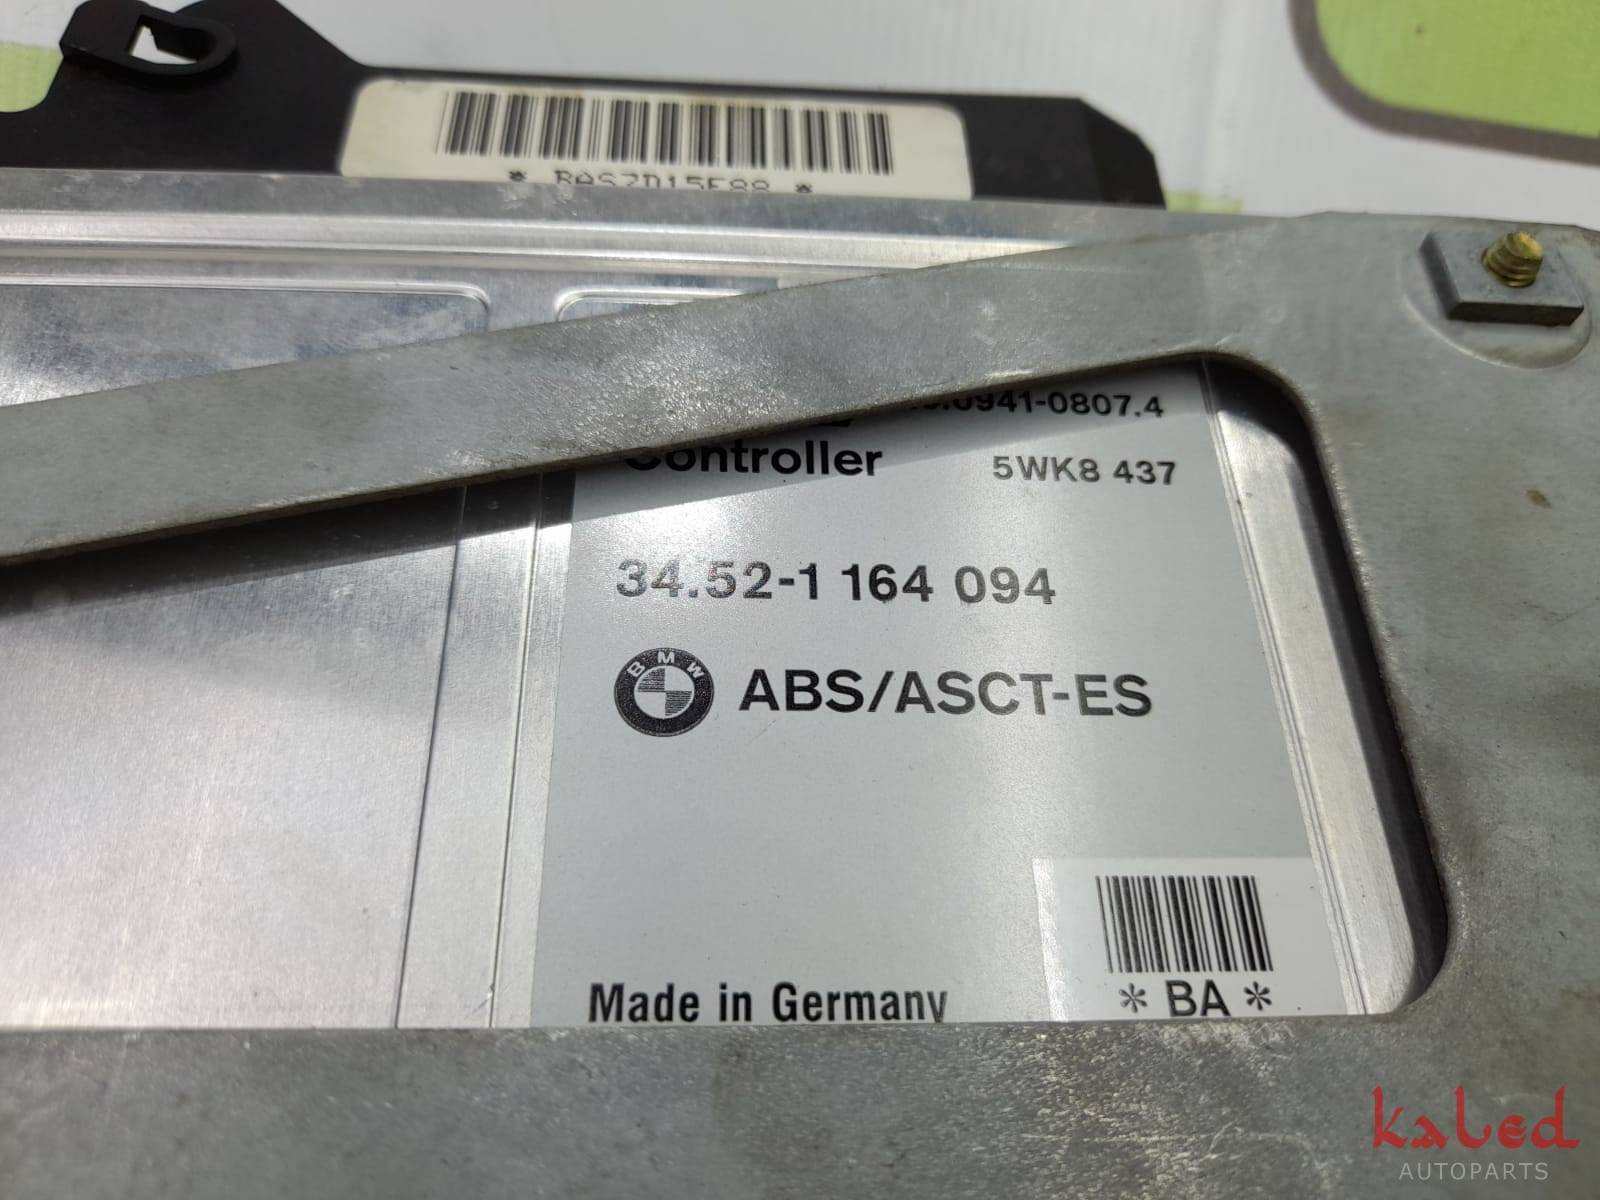 Módulo ABS BMW E36 5WK8 437 / 34.52-1 164 094 - Kaled Auto Parts